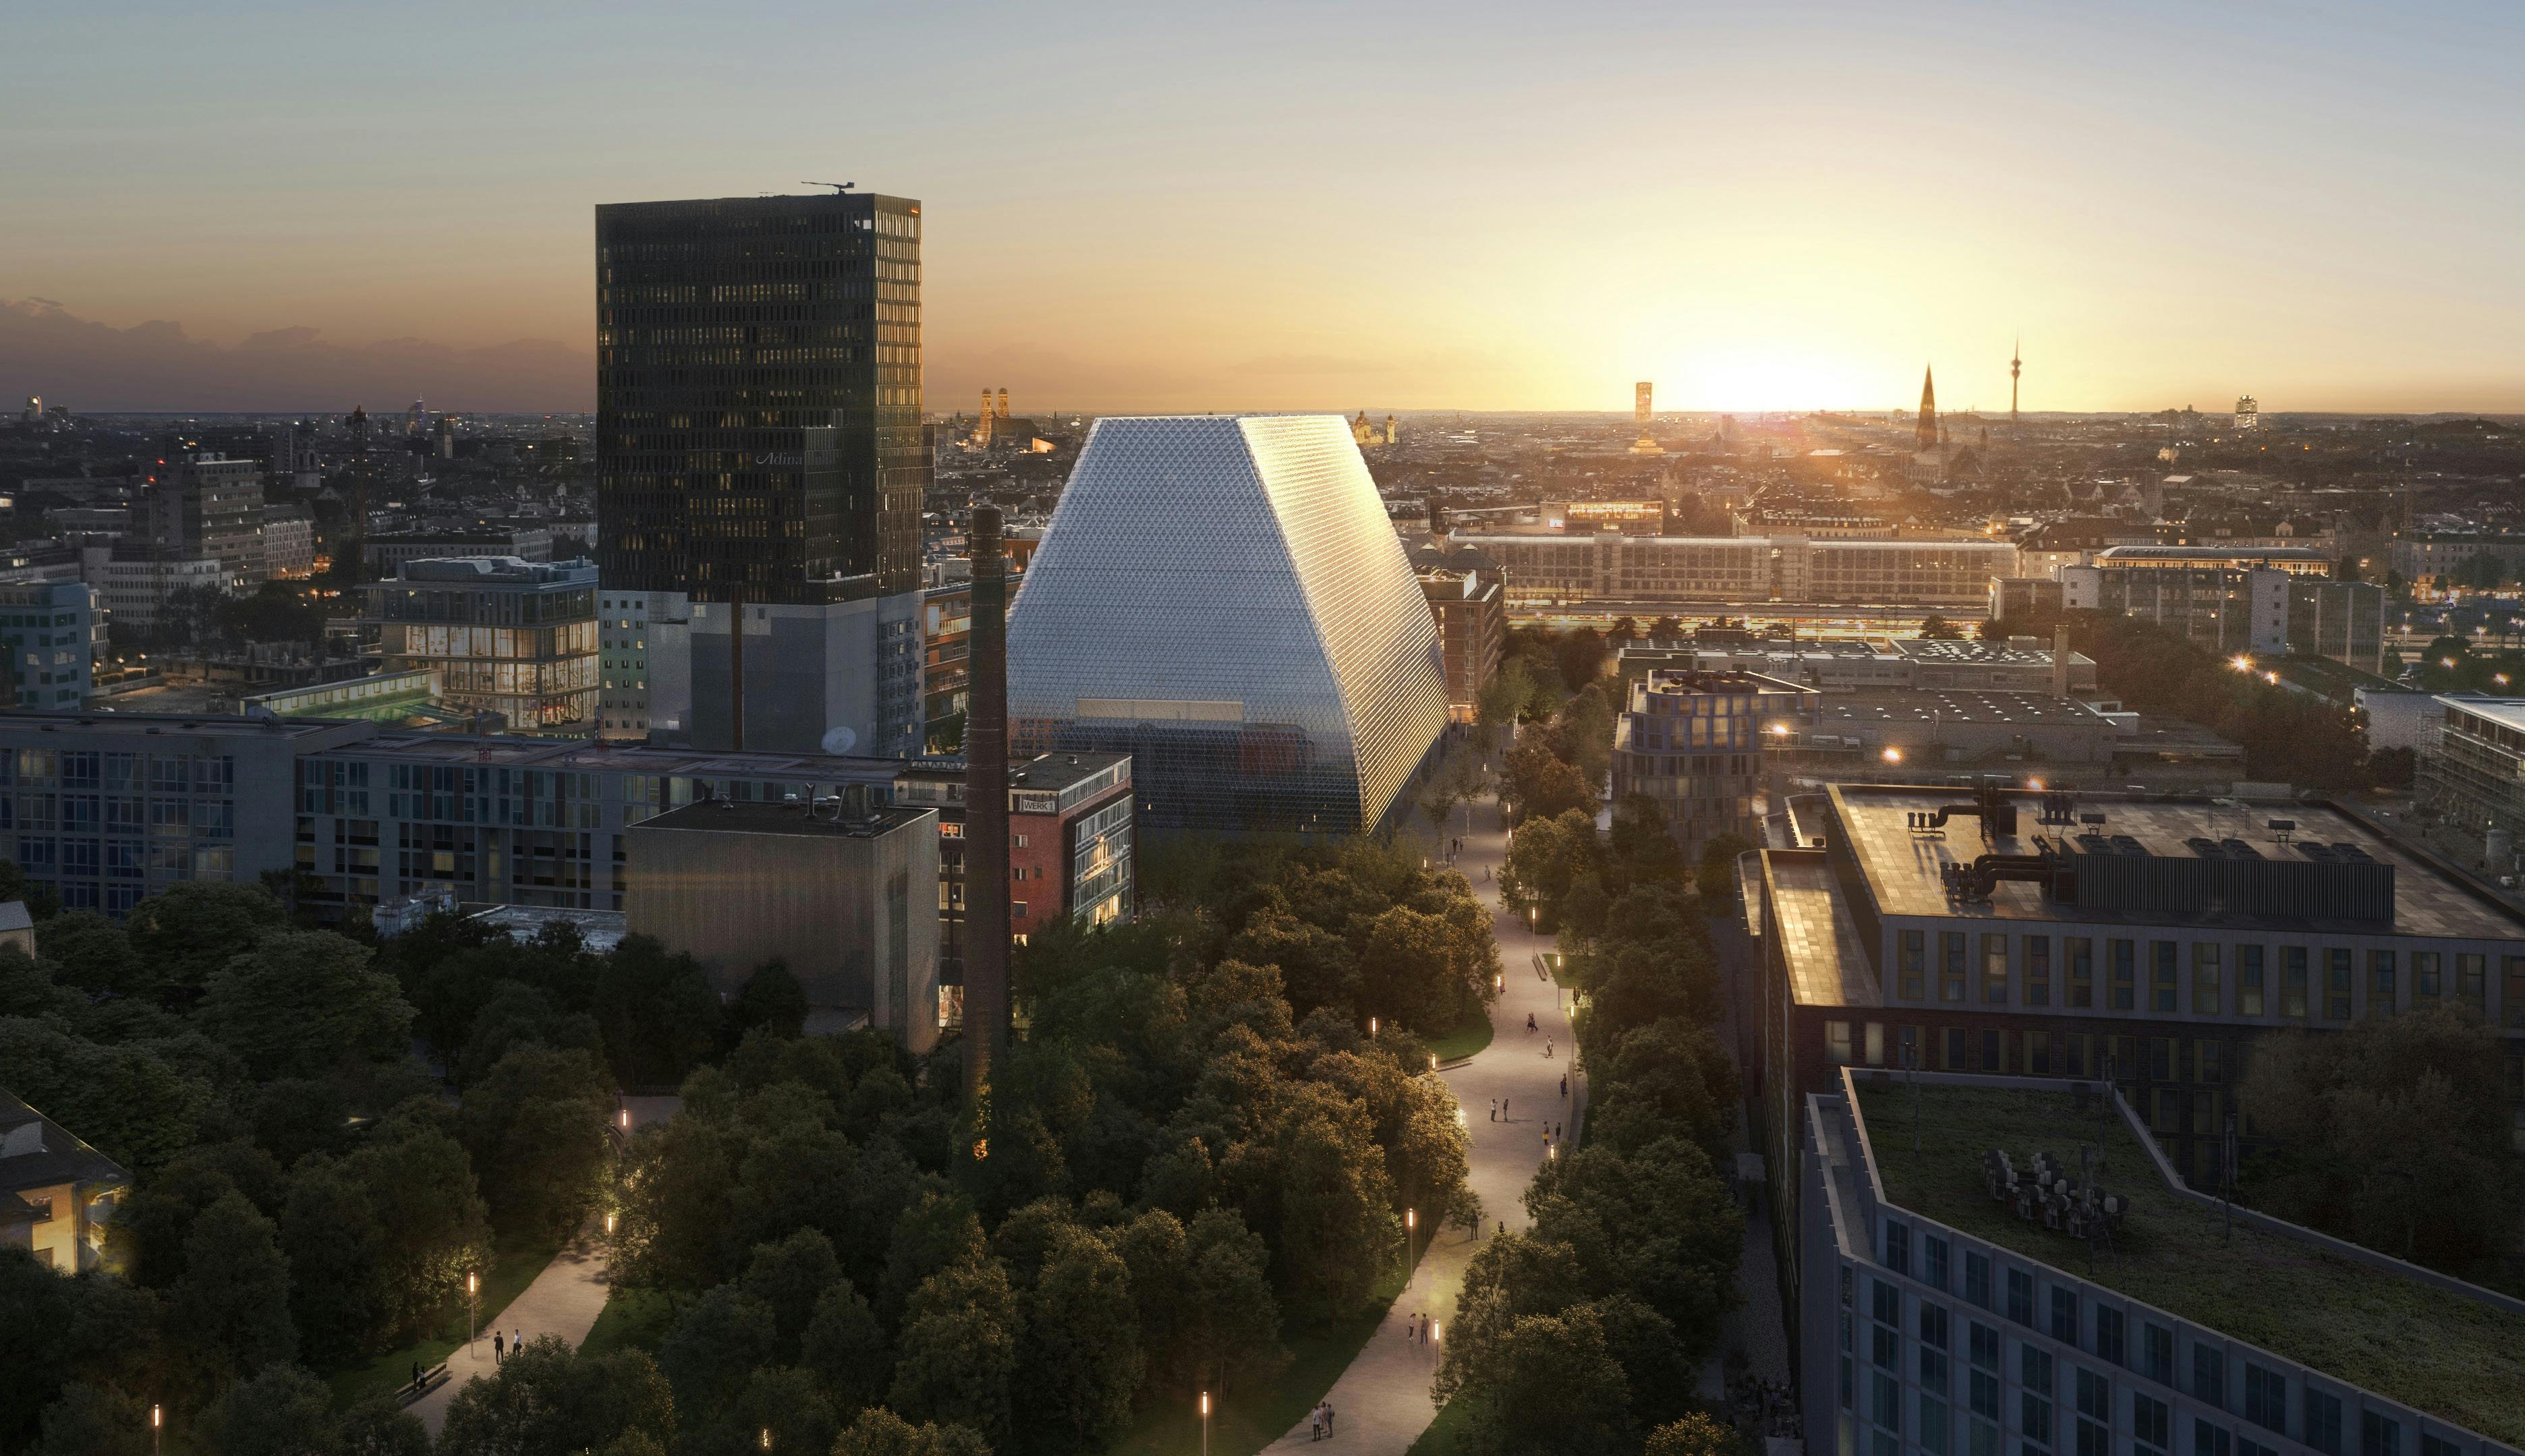 Errichtung eines neuen Konzerthauses in München